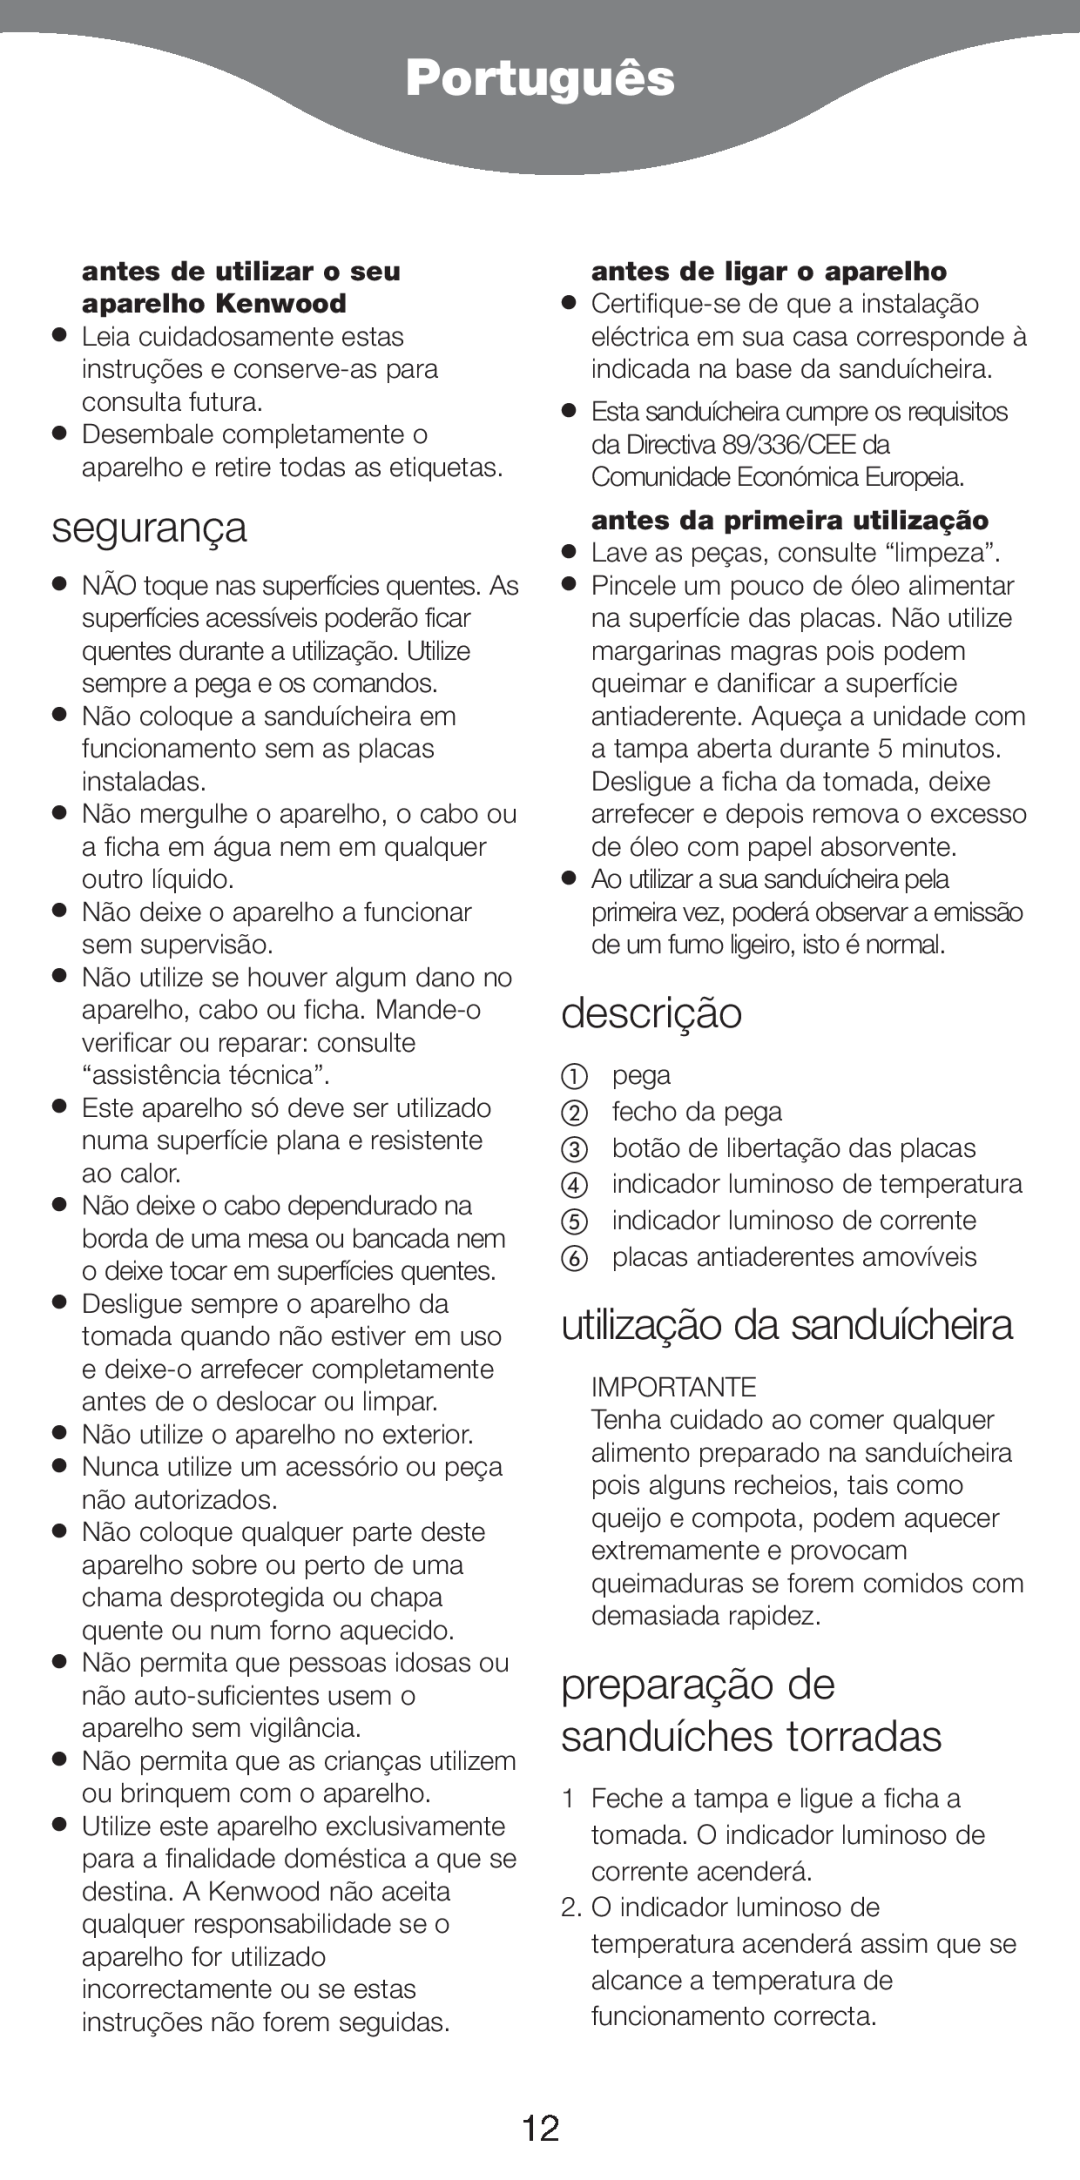 Kenwood SM420 manual Português, segurança, descrição, utilização da sanduícheira, preparação de sanduíches torradas 